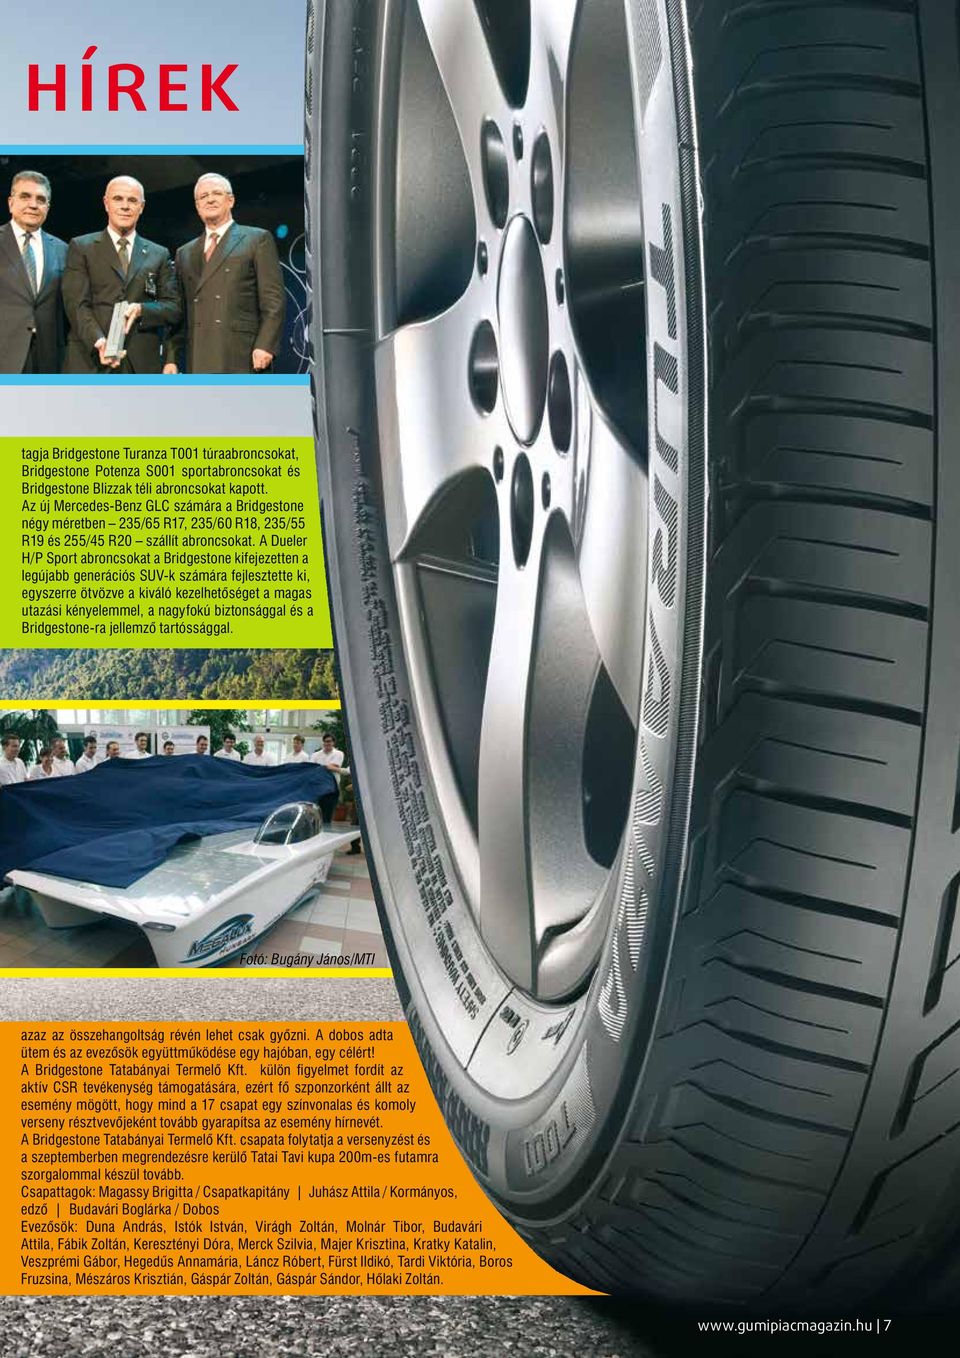 A Dueler H/P Sport abroncsokat a Bridgestone kifejezetten a legújabb generációs SUV-k számára fejlesztette ki, egyszerre ötvözve a kiváló kezelhetőséget a magas utazási kényelemmel, a nagyfokú